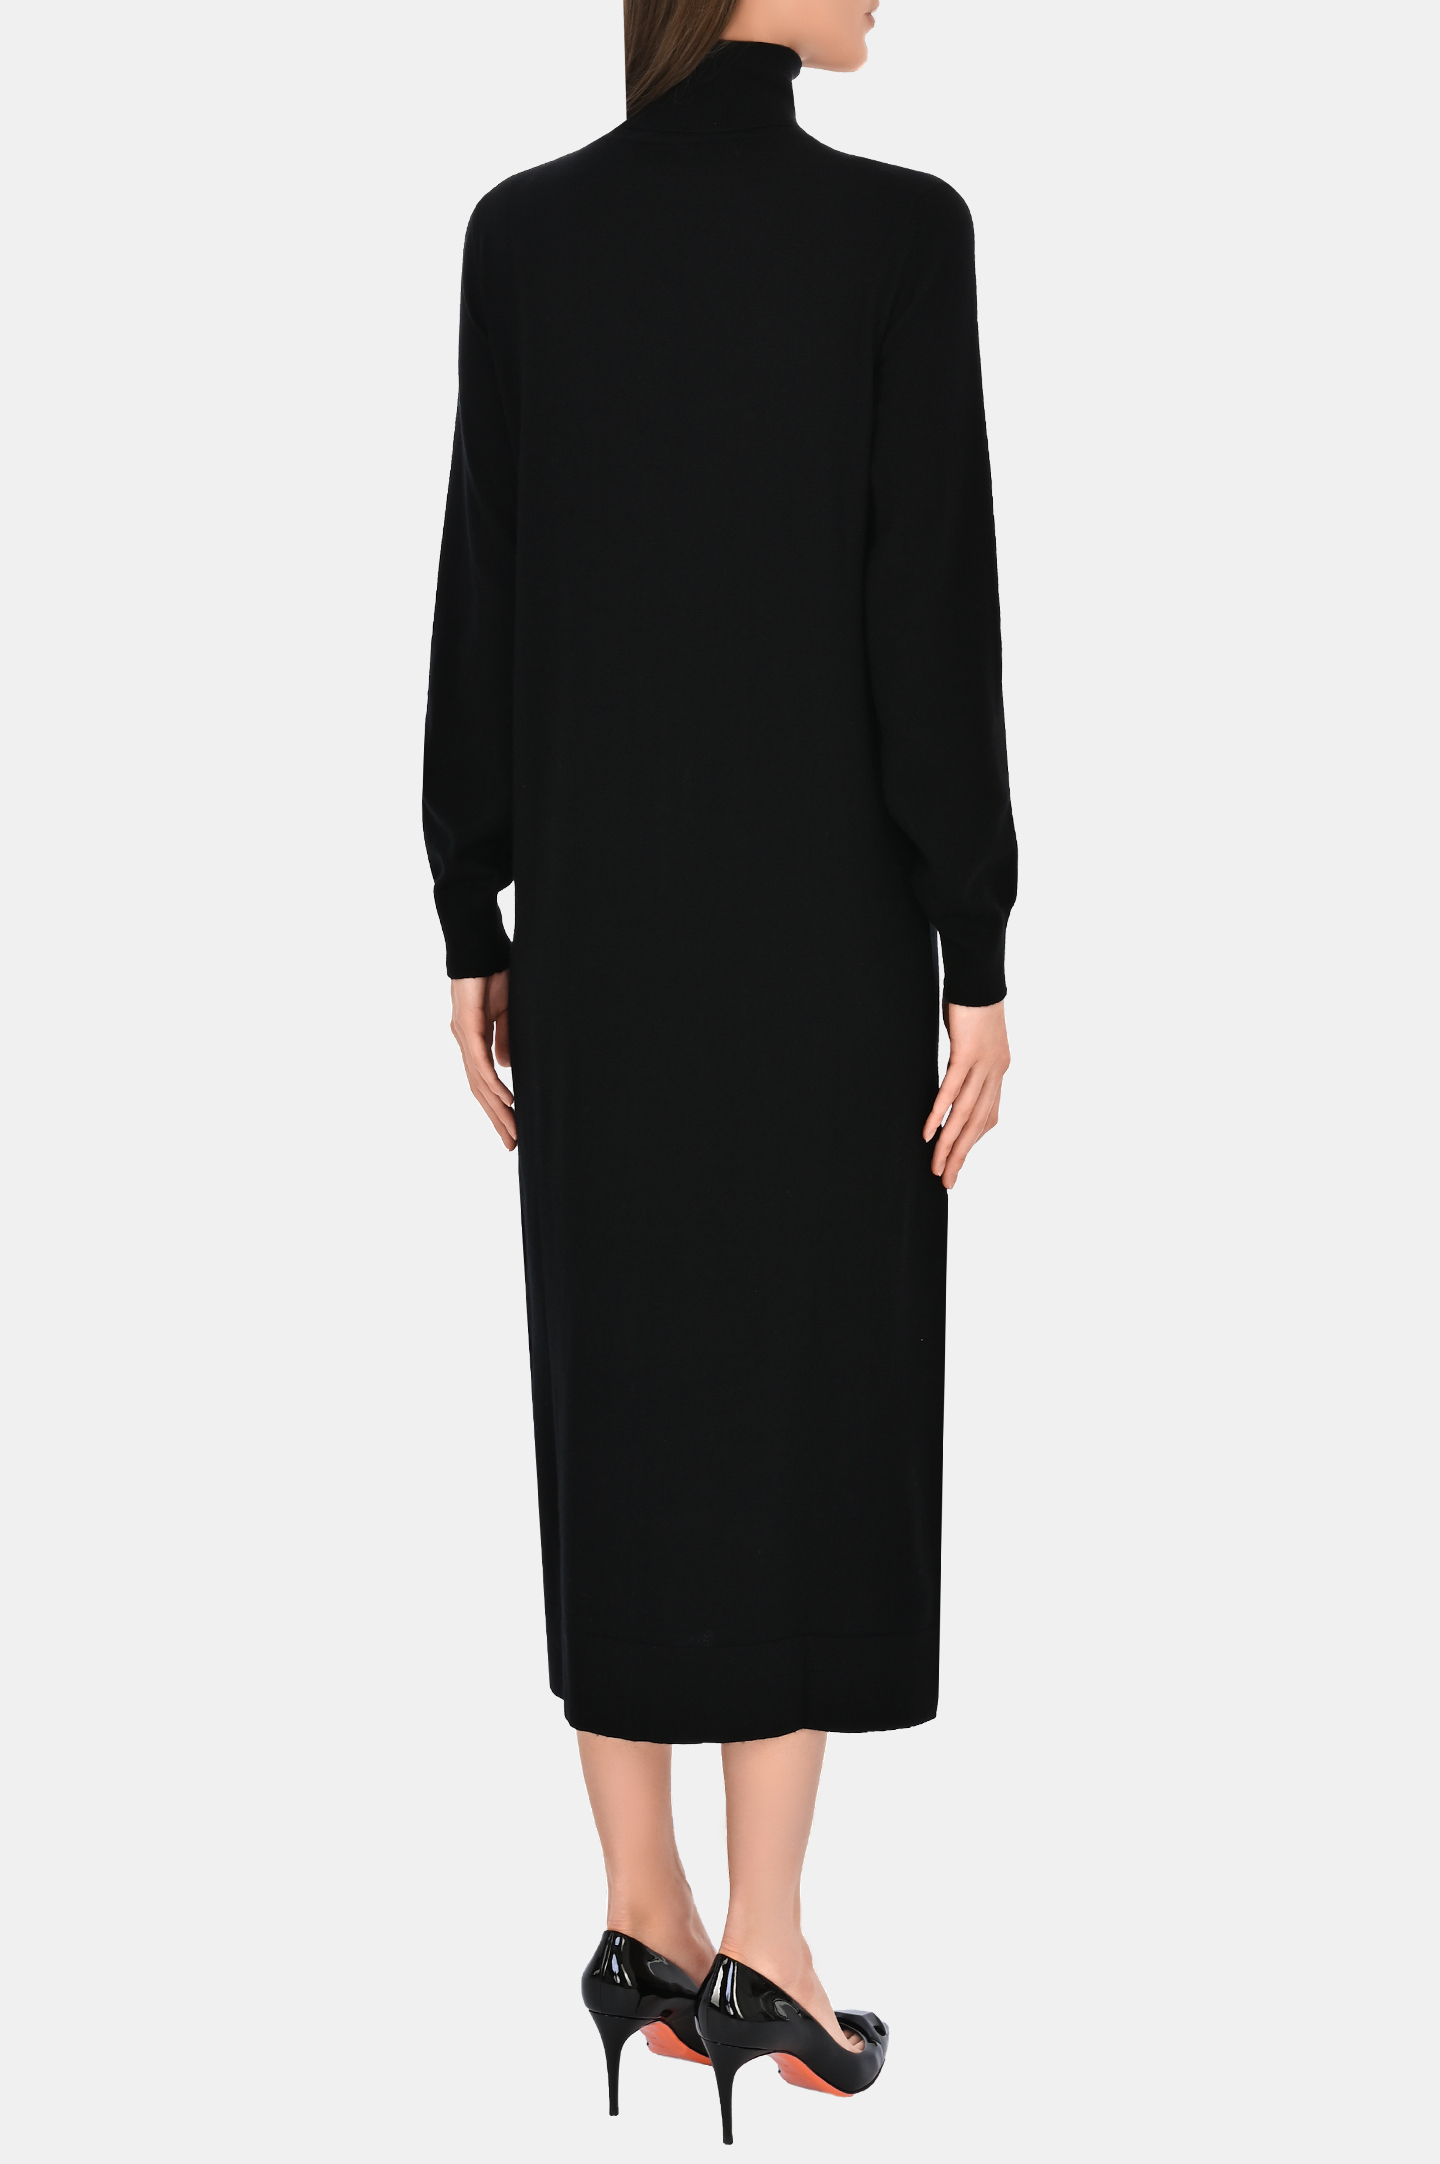 Платье P.A.R.O.S.H. D550821-LIME, цвет: Черный, Женский